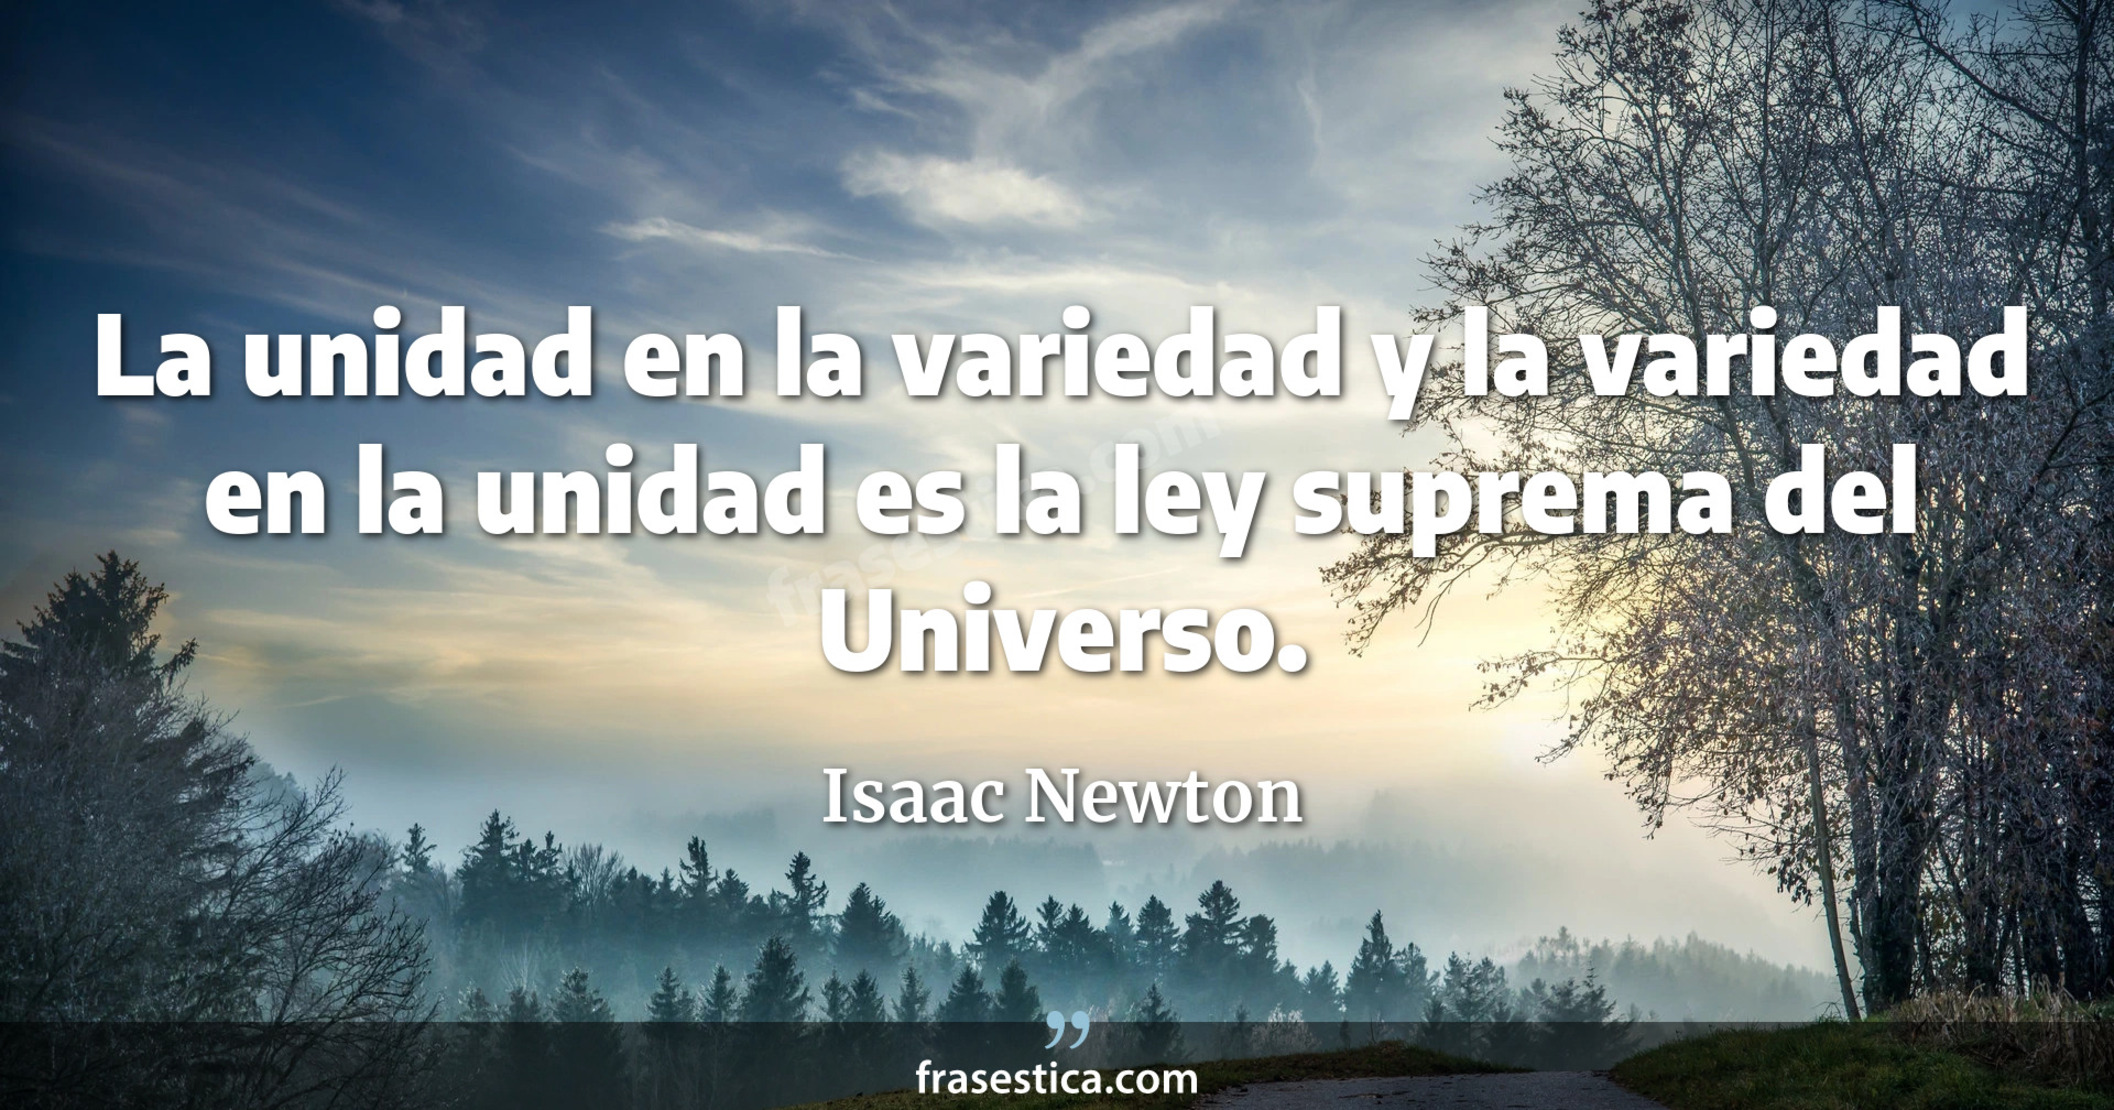 La unidad en la variedad y la variedad en la unidad es la ley suprema del Universo. - Isaac Newton